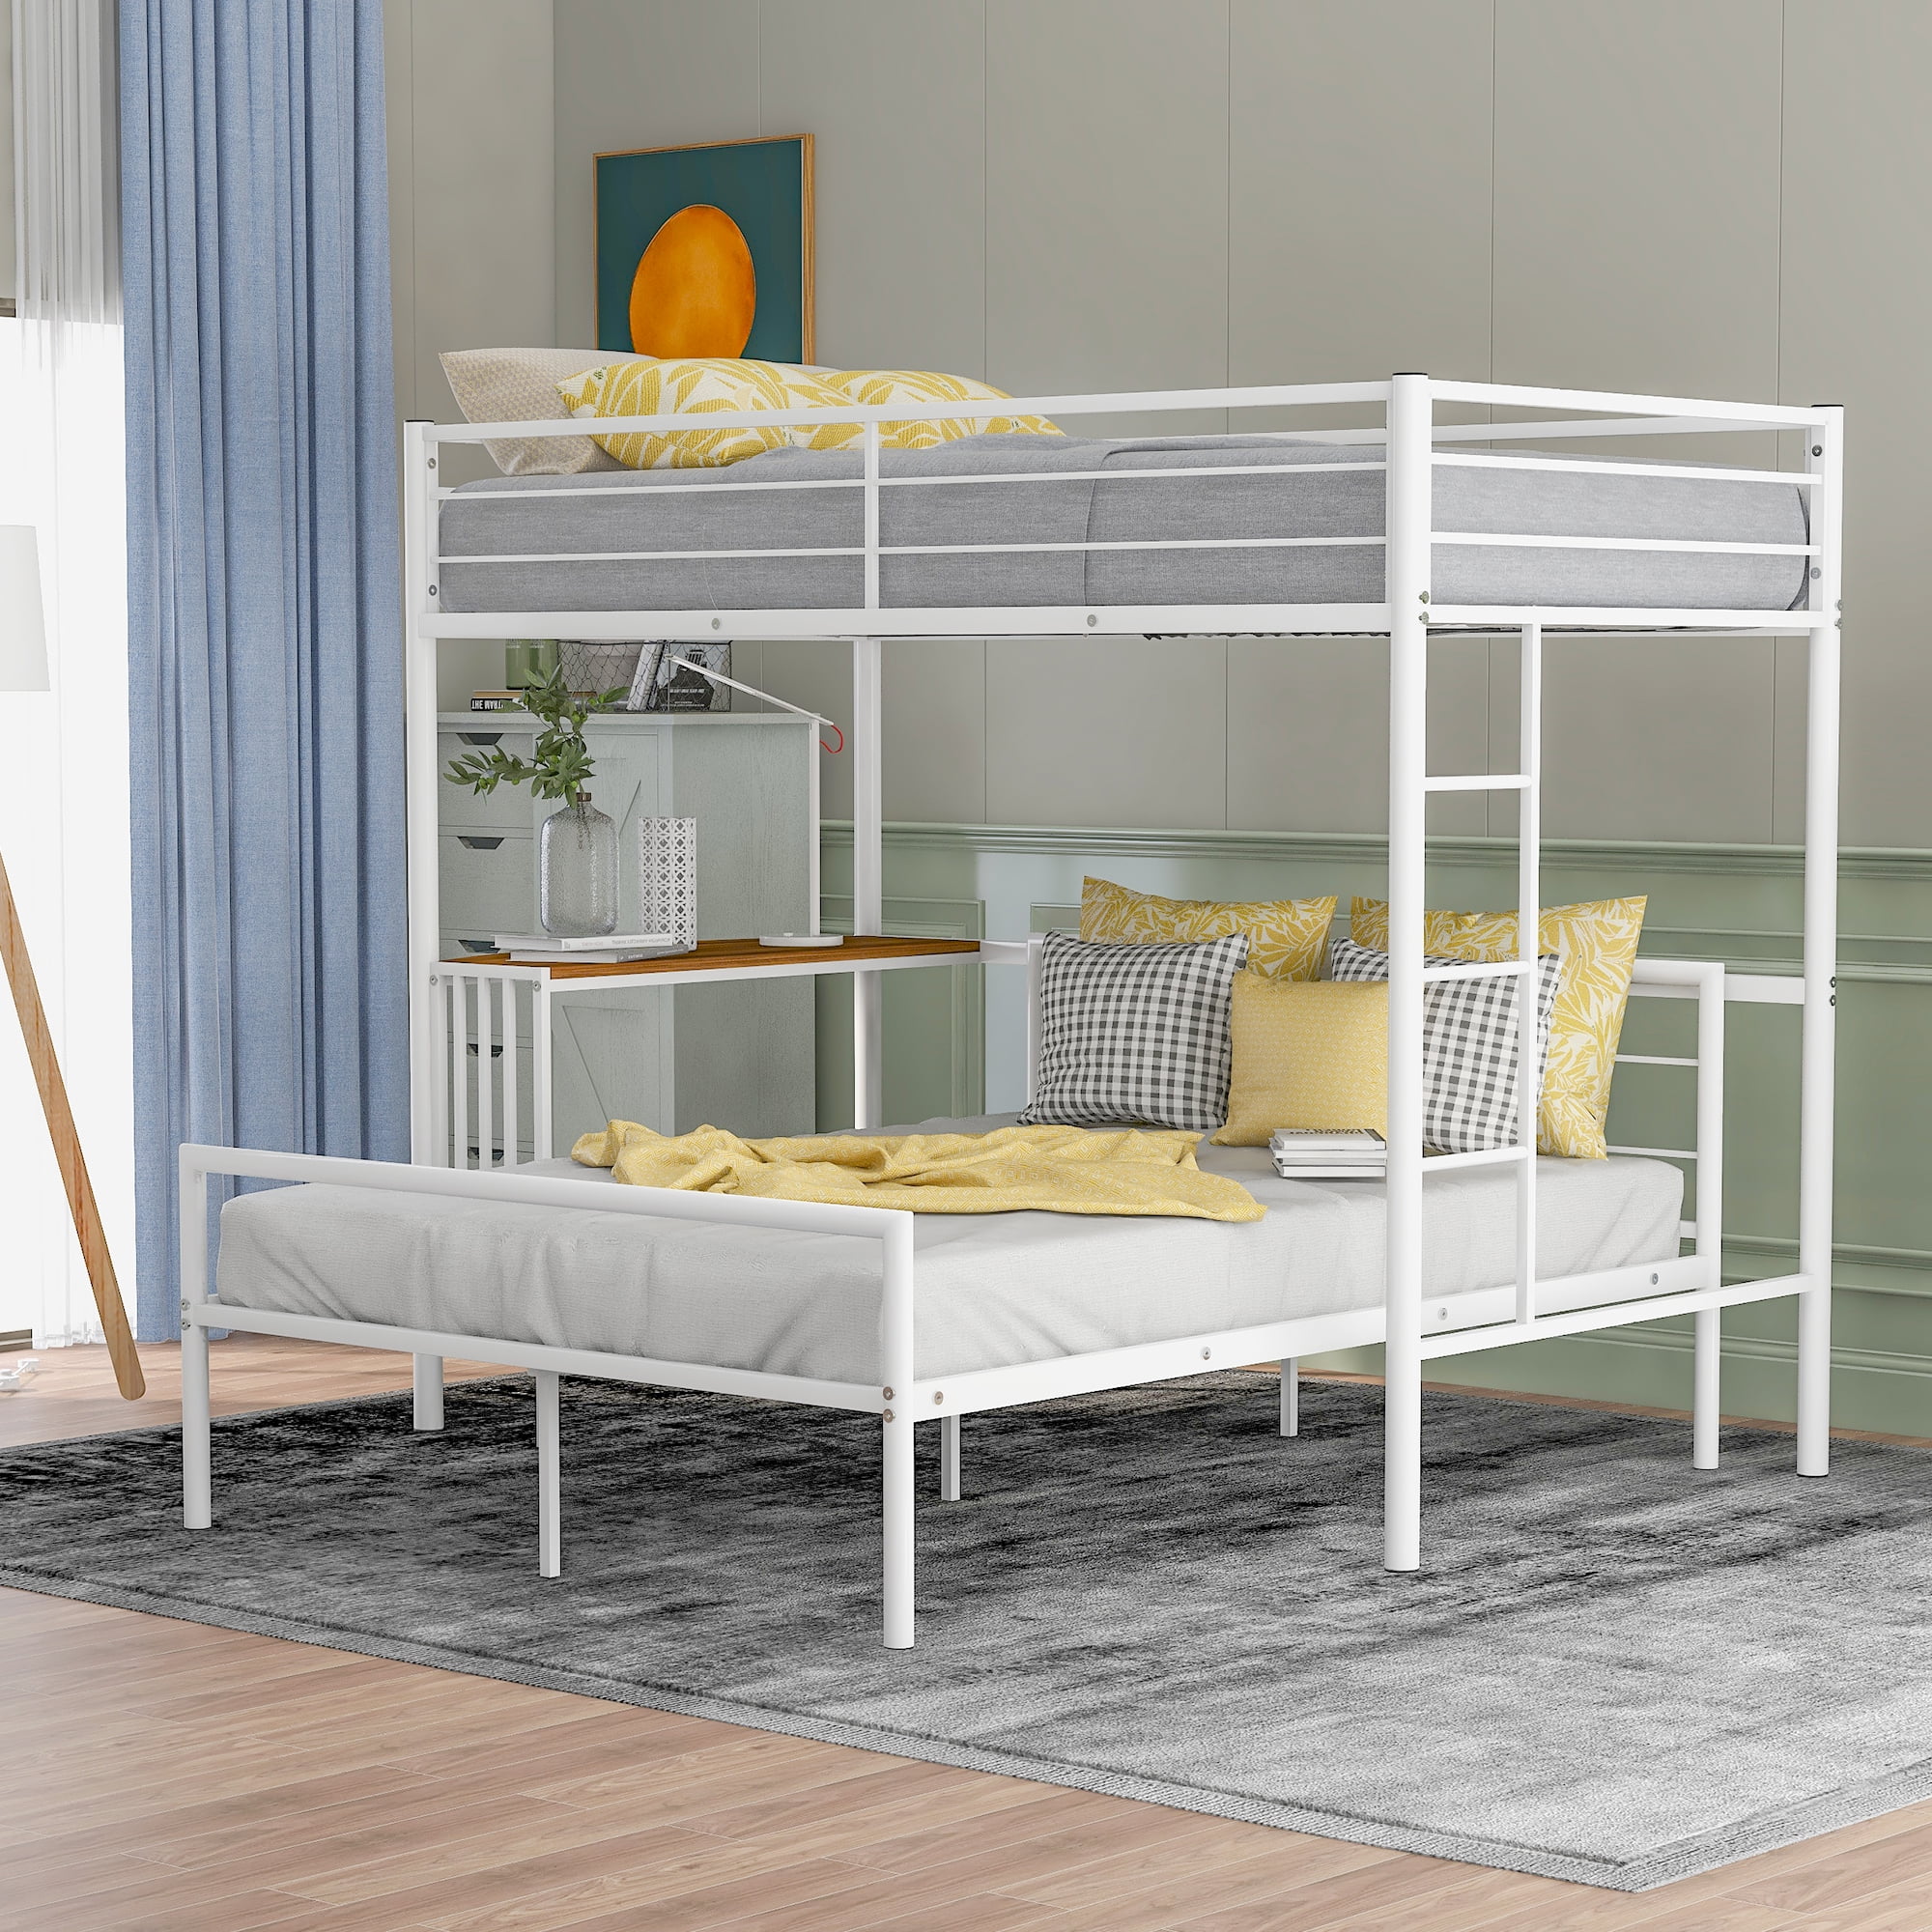 Kids Bunk Twin Metal Loft Bed Frame Size Bedroom Home Furniture Over Ladder Dorm 